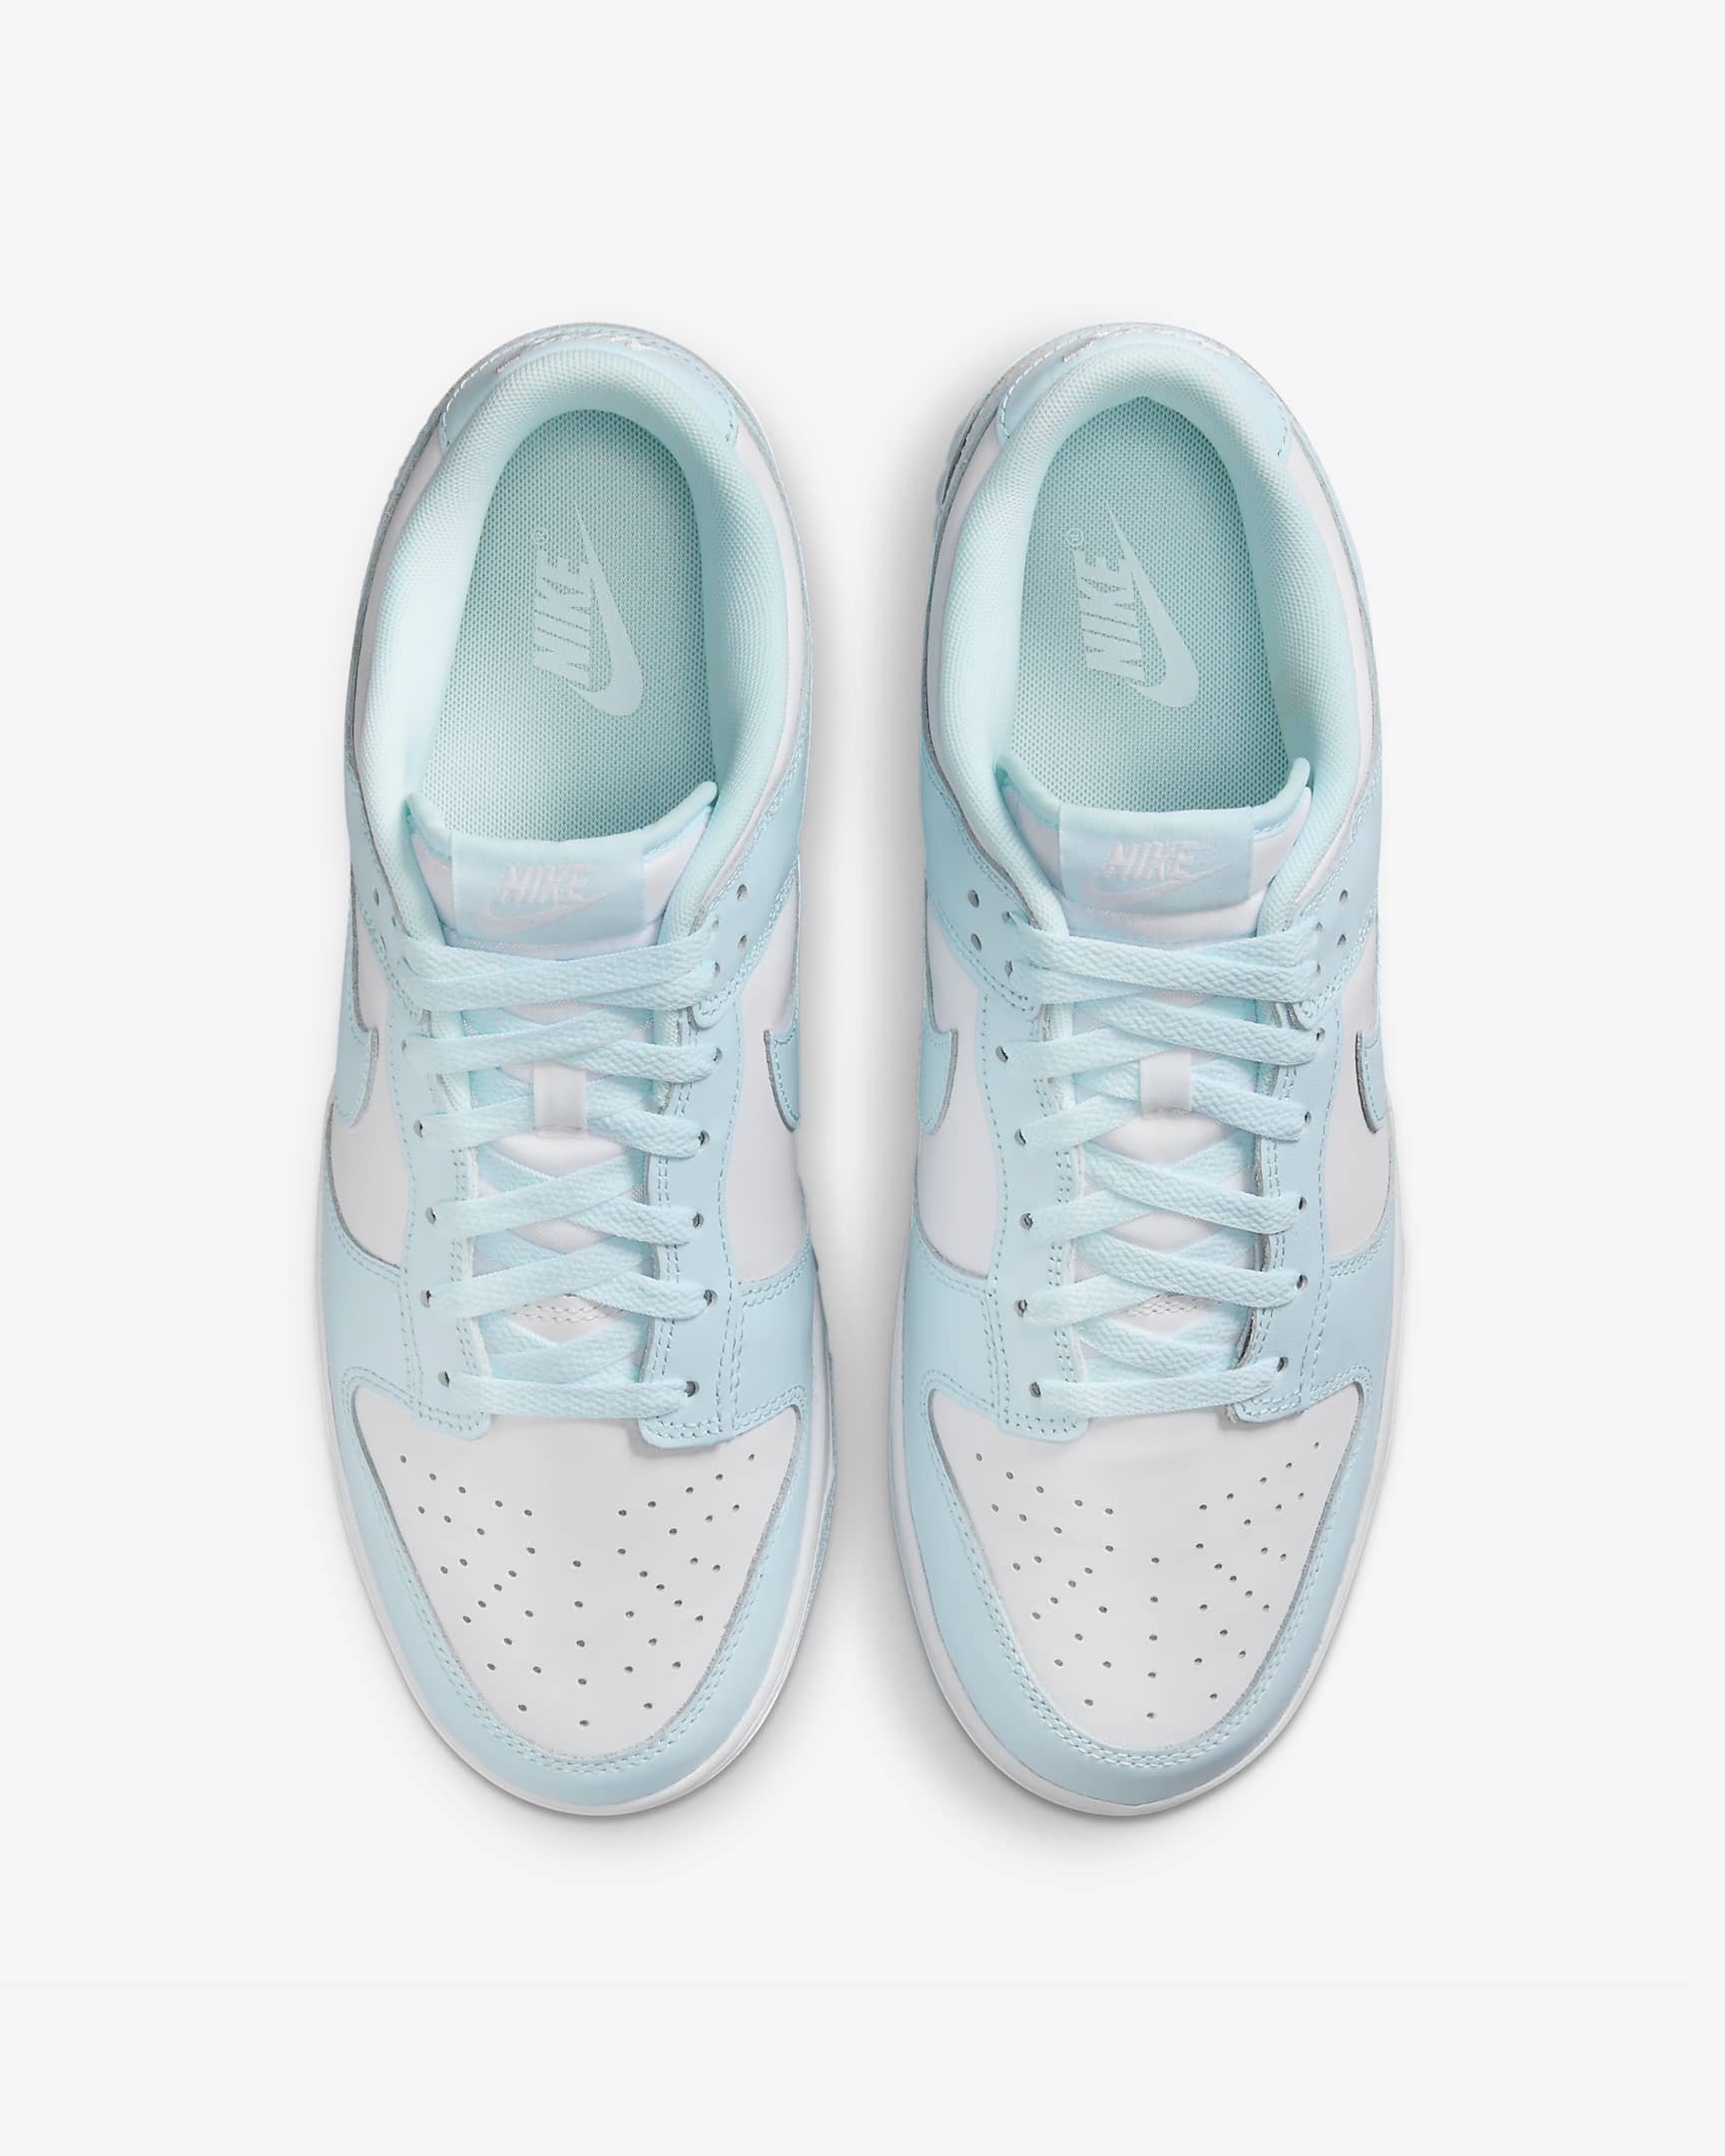 Nike Dunk Low Retro Men's Shoes - White/Glacier Blue